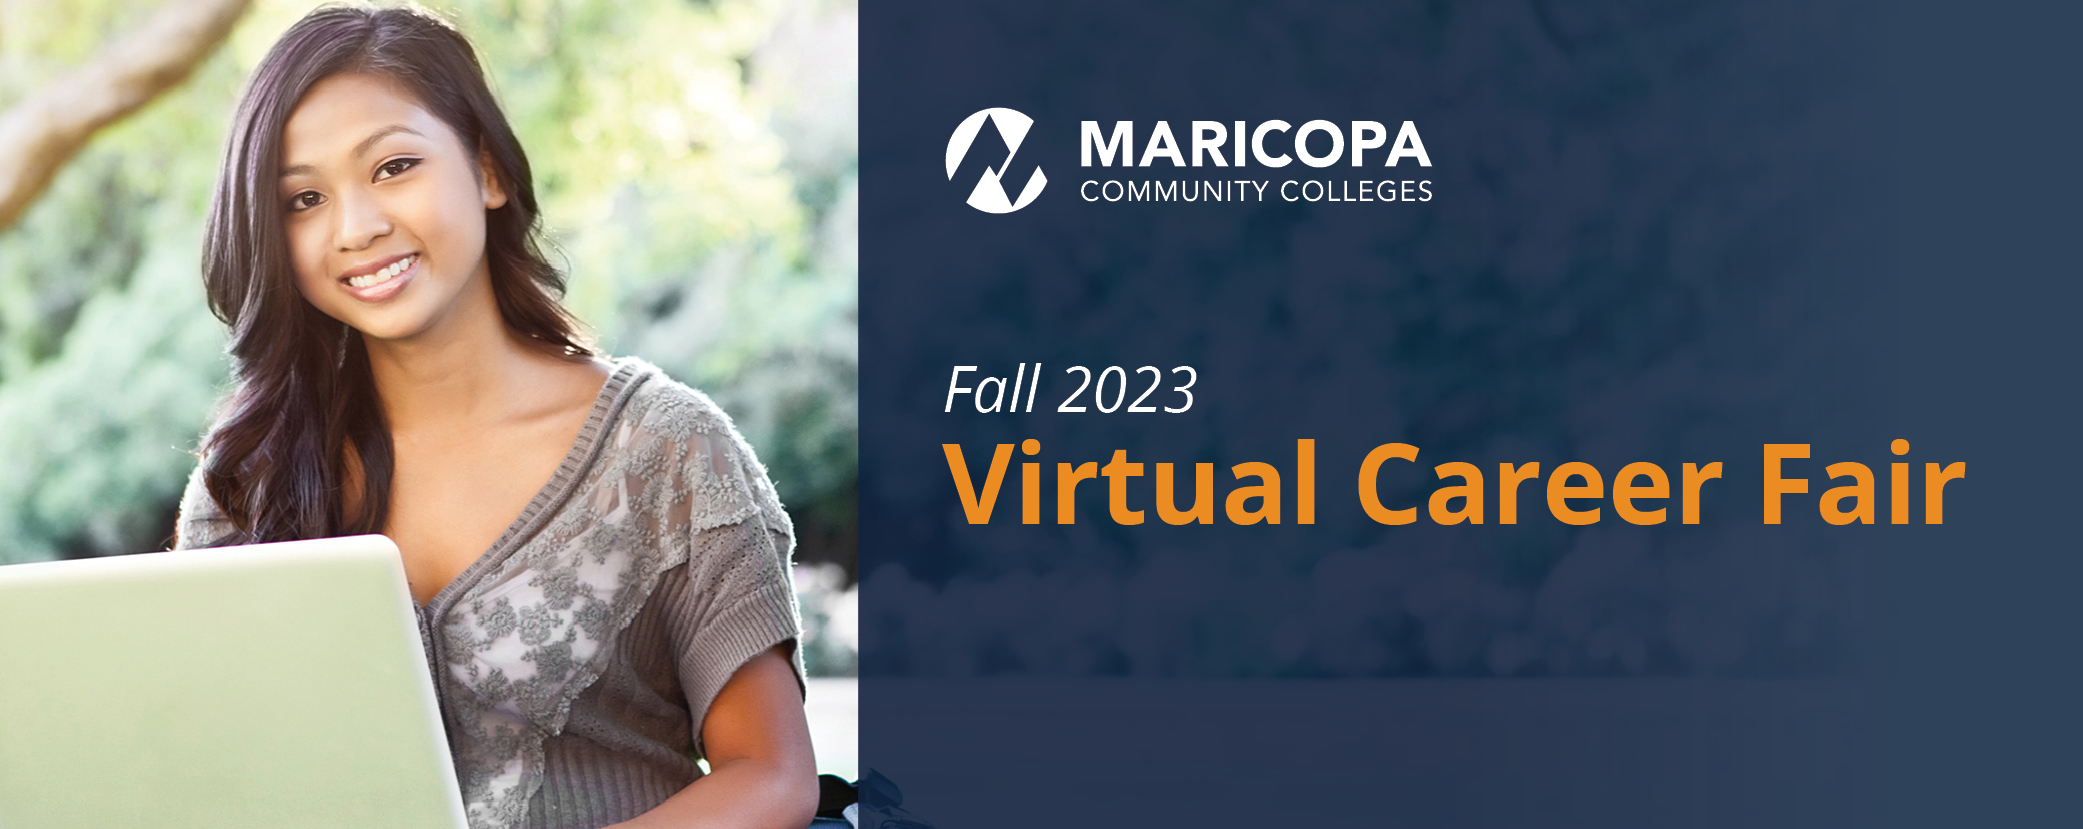 Fall 2023 Virtual Career Fair